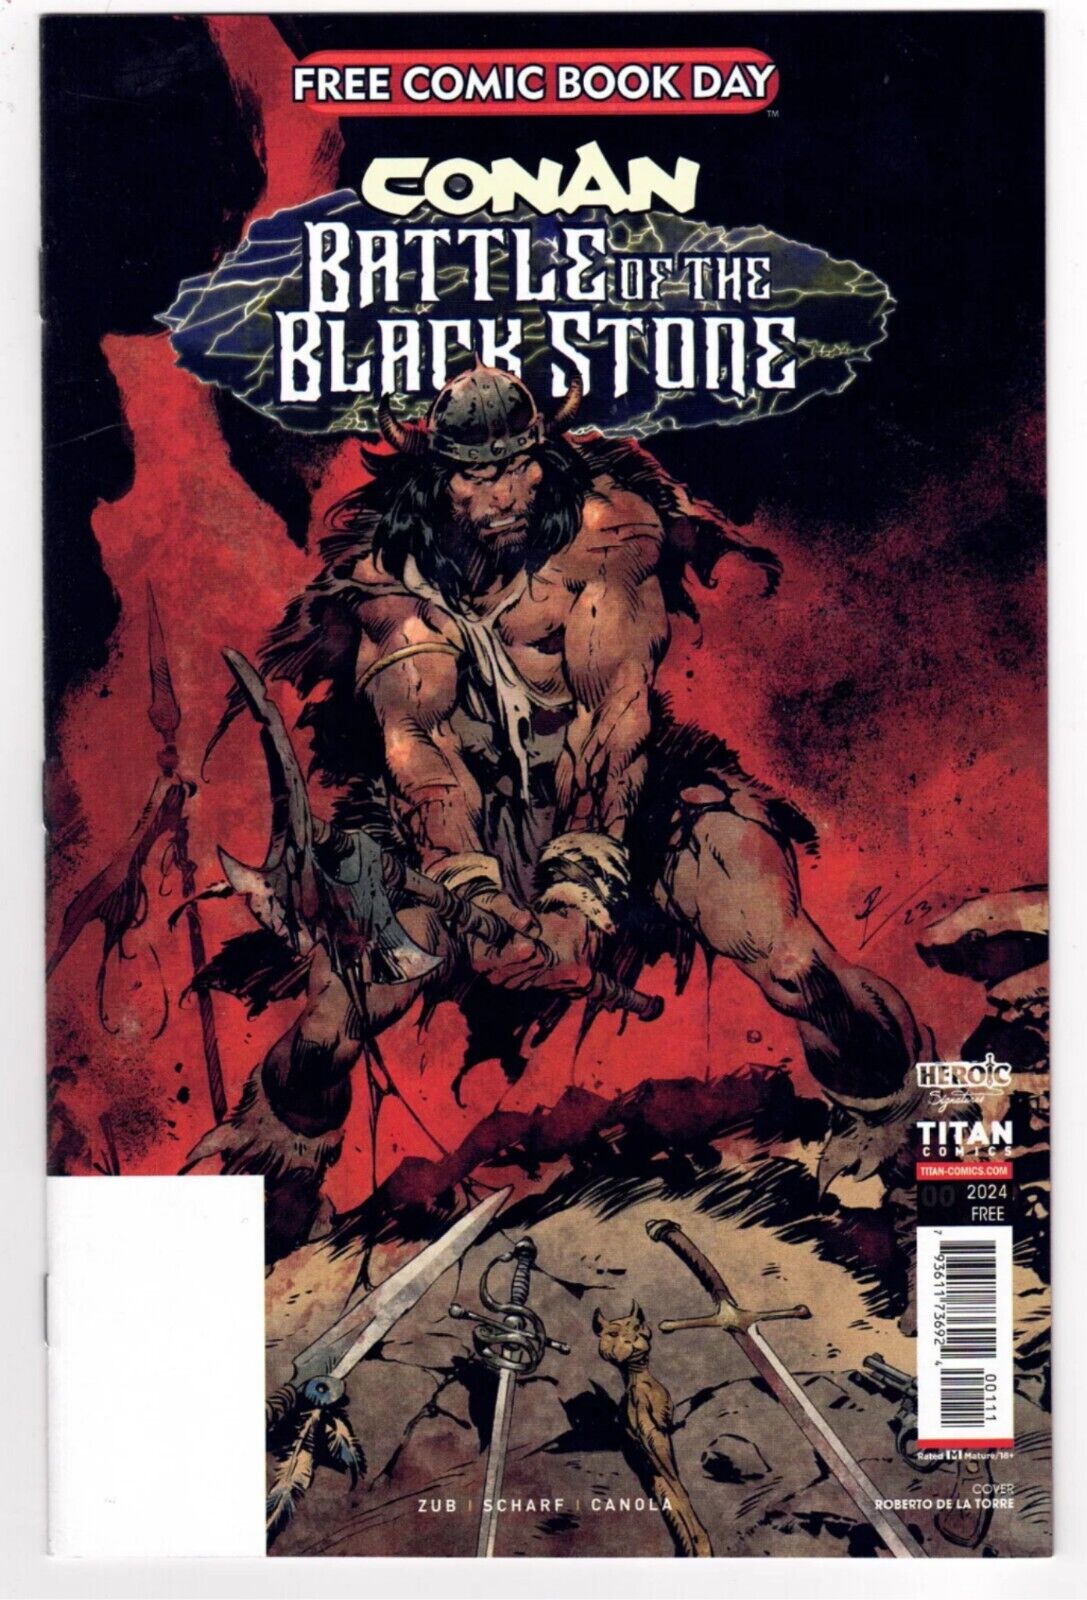 CONAN Battle Of The Black Stone #1  (2024) FCBD Free Comic Book Day NO STAMP